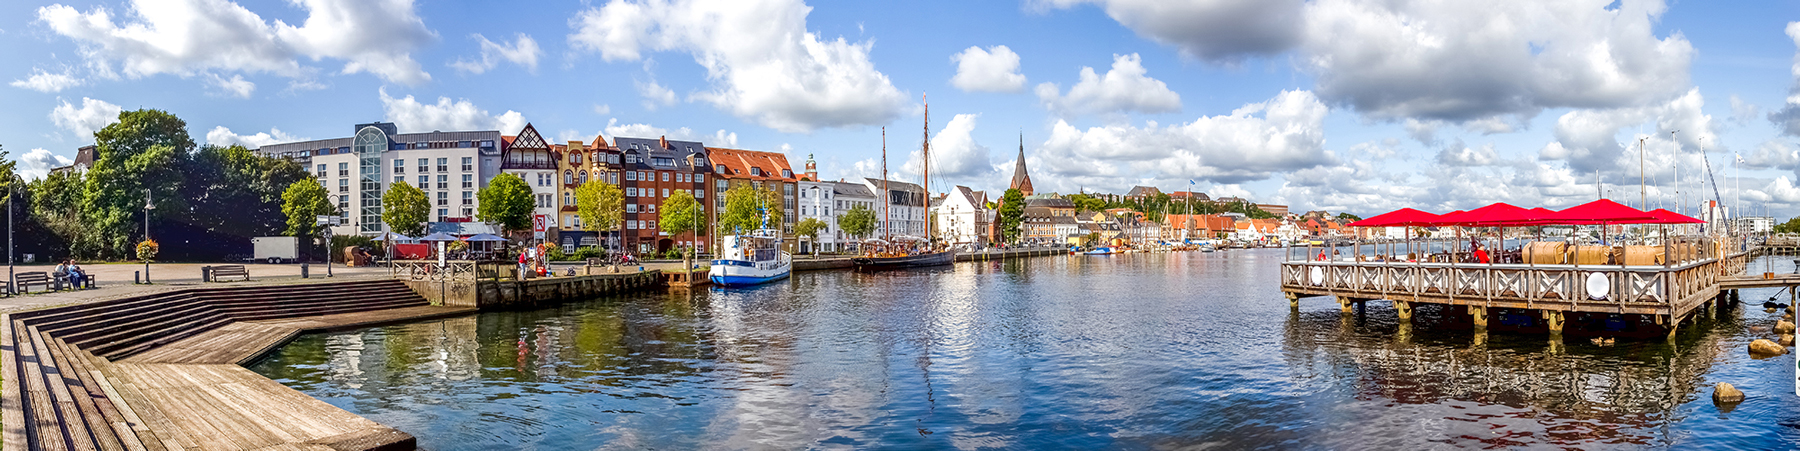 Flensburg Hafen Häuser Immobilien Wasser